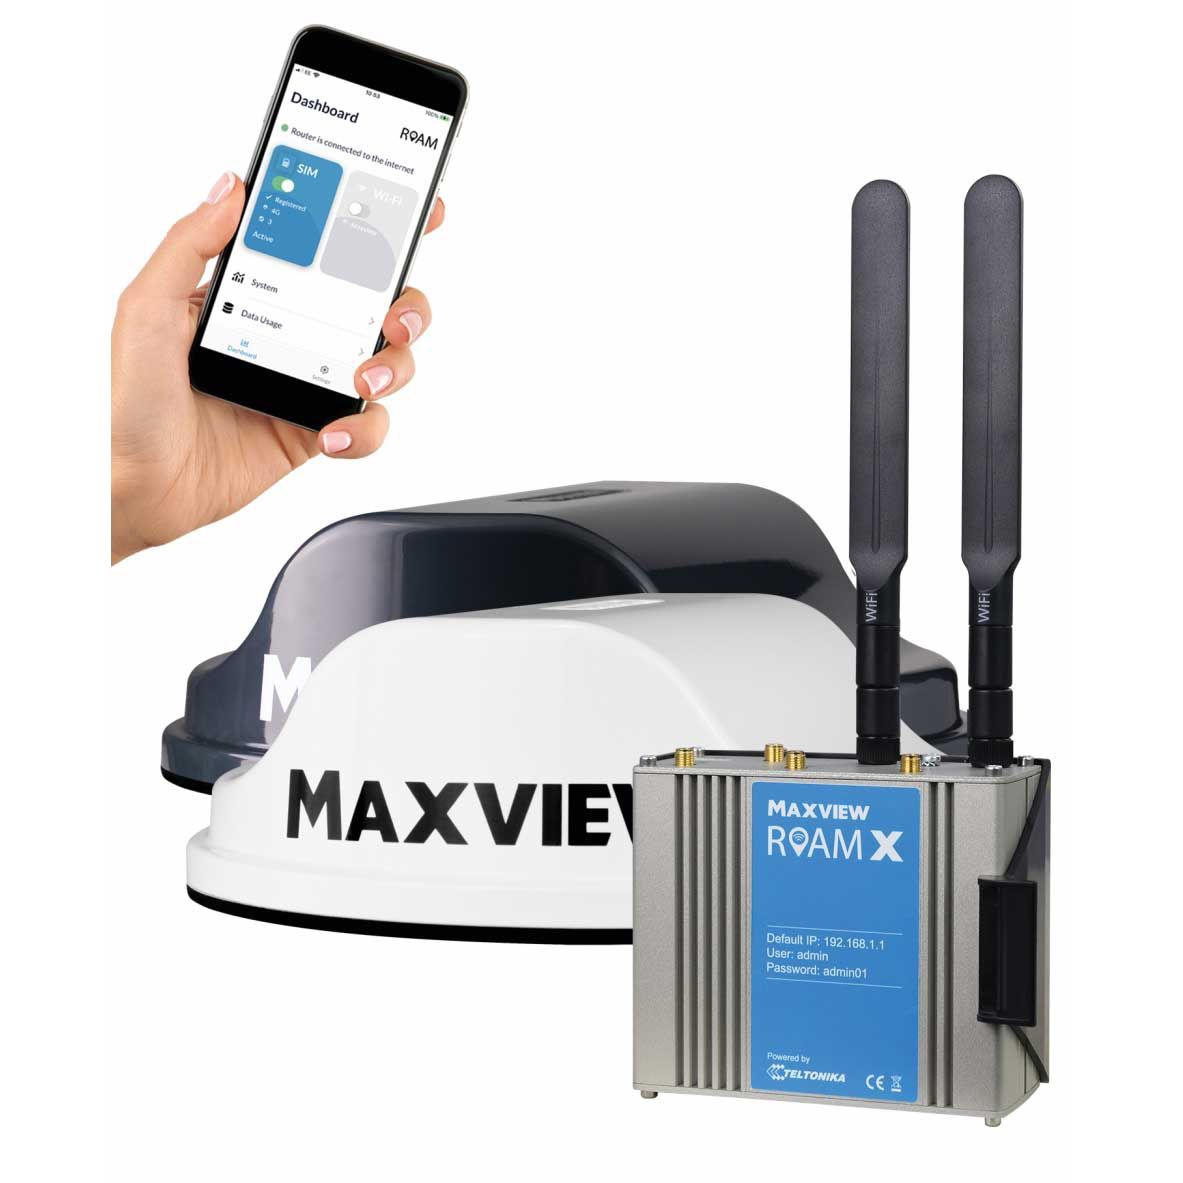 MAXVIEW Roam X Mobiles 4G-5G WiFi-System schwarz 40009A